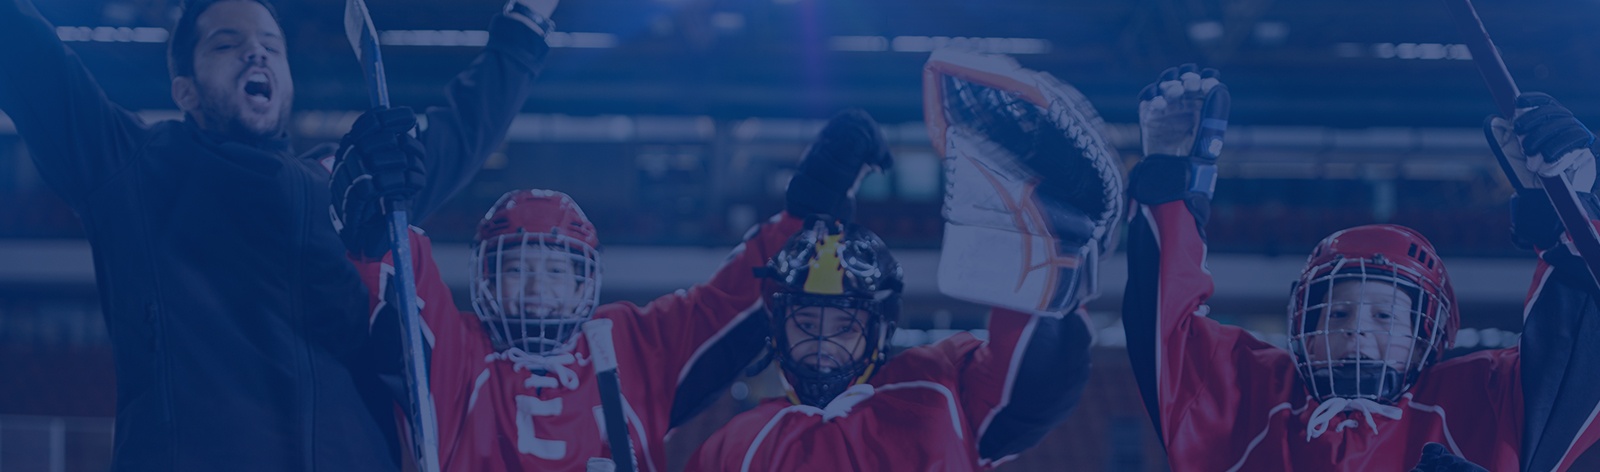 Hockey Club Toronto